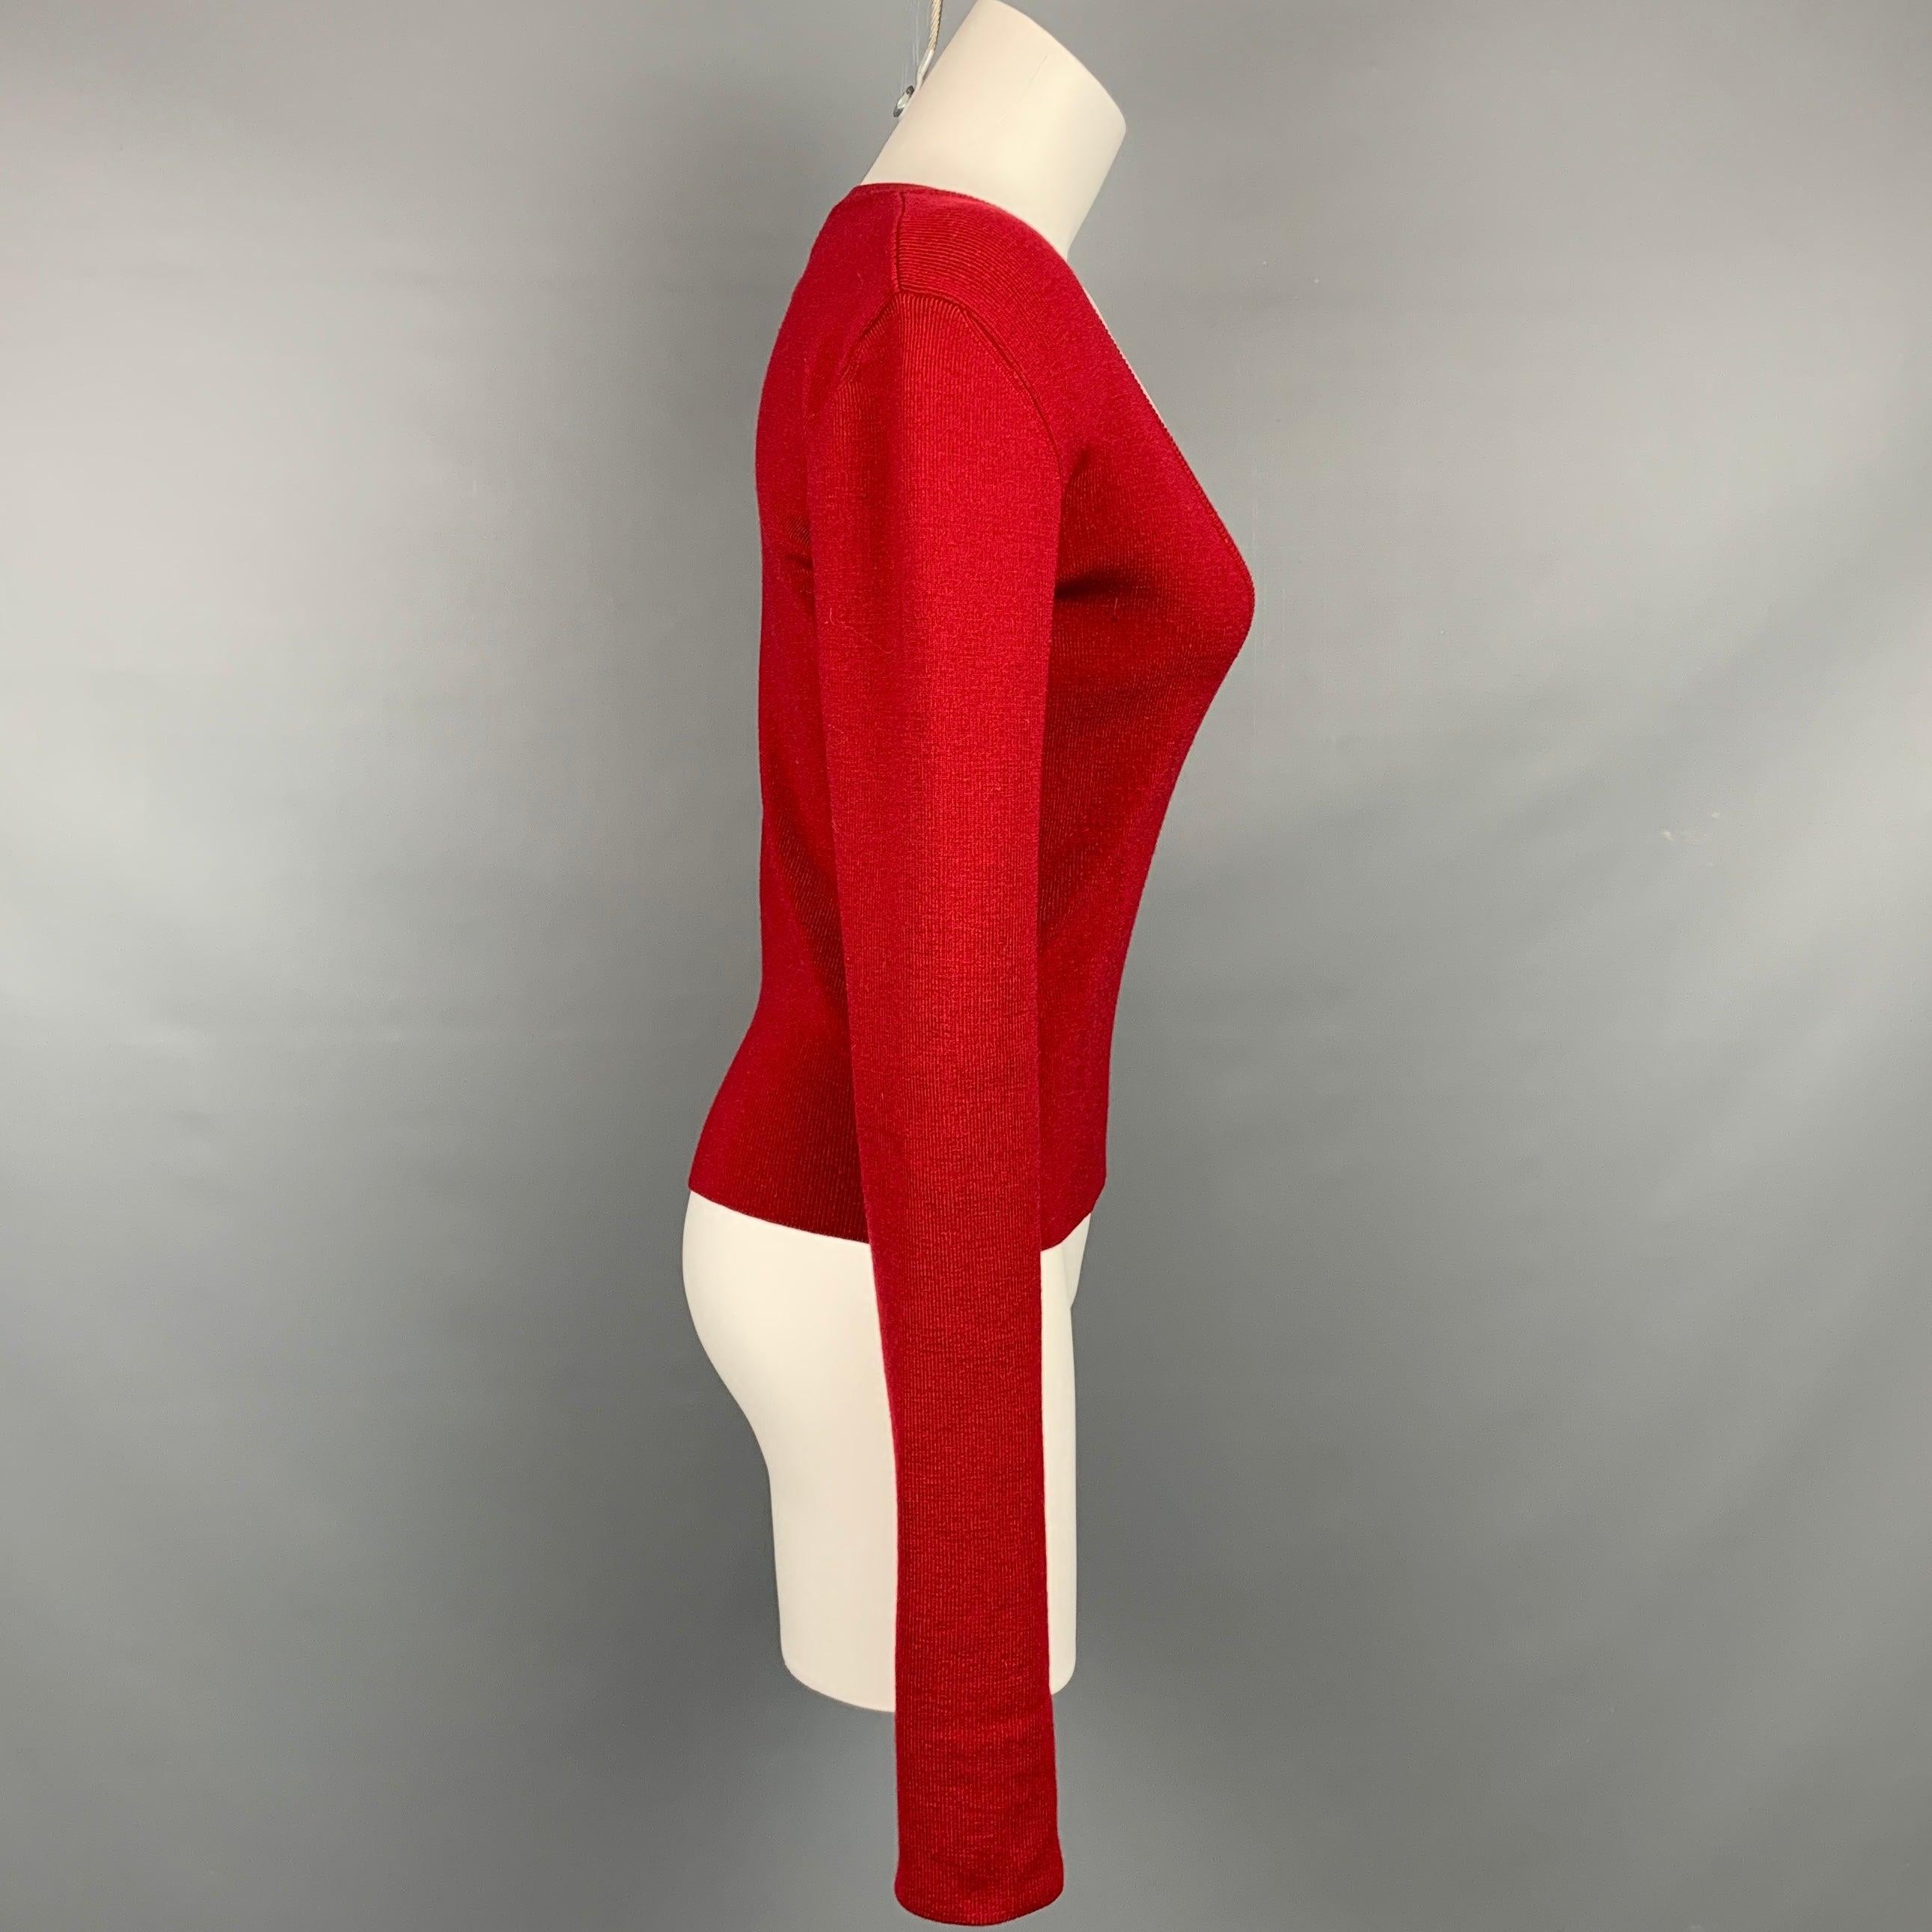 Le pull de DSQUARED2 est réalisé en laine rouge côtelée et présente une encolure en V profonde. Fabriqué en Italie.
Etat d'occasion. 

Marqué :   M 

Mesures : 
 
Épaule : 16 pouces  Poitrine : 35 pouces  Manches : 30 pouces  Longueur : 19,5 pouces